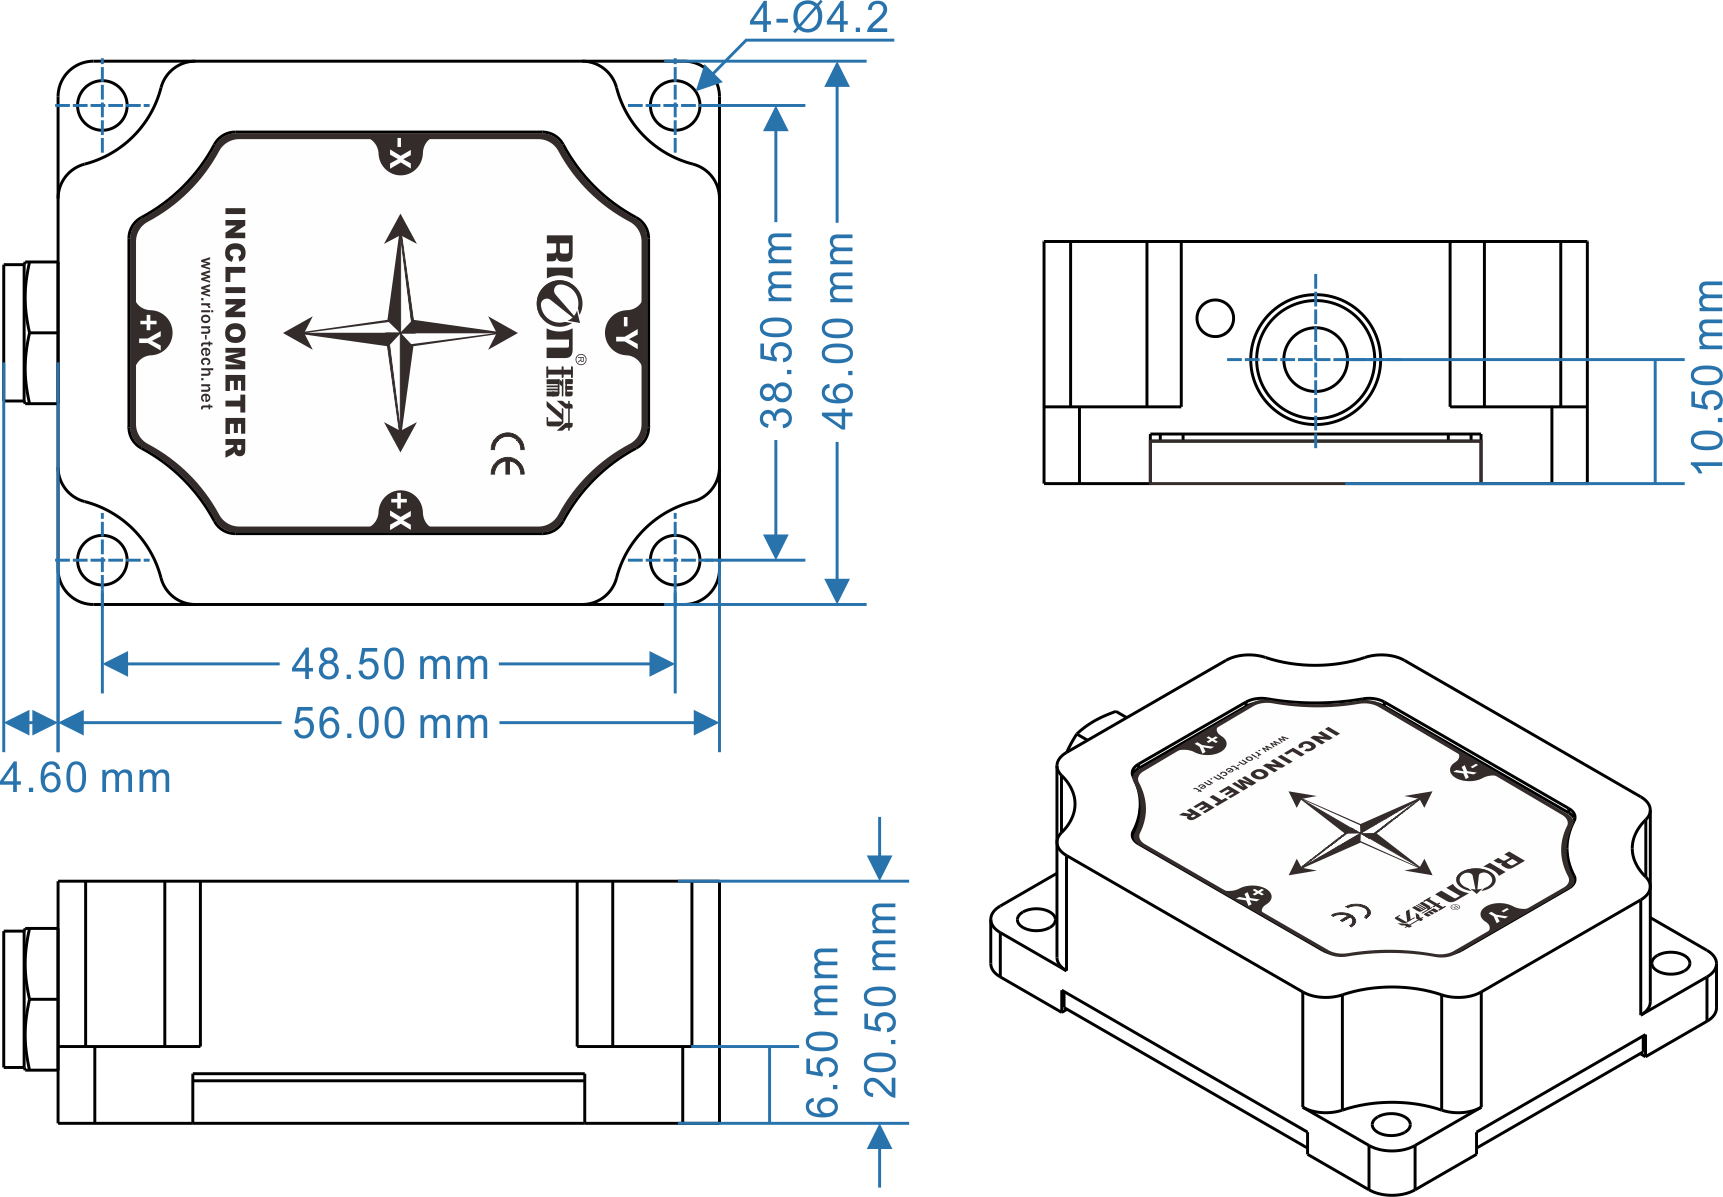 Inclinomètre mono-axe - DMI810 - SHENZHEN RION TECHNOLOGY CO.,LTD